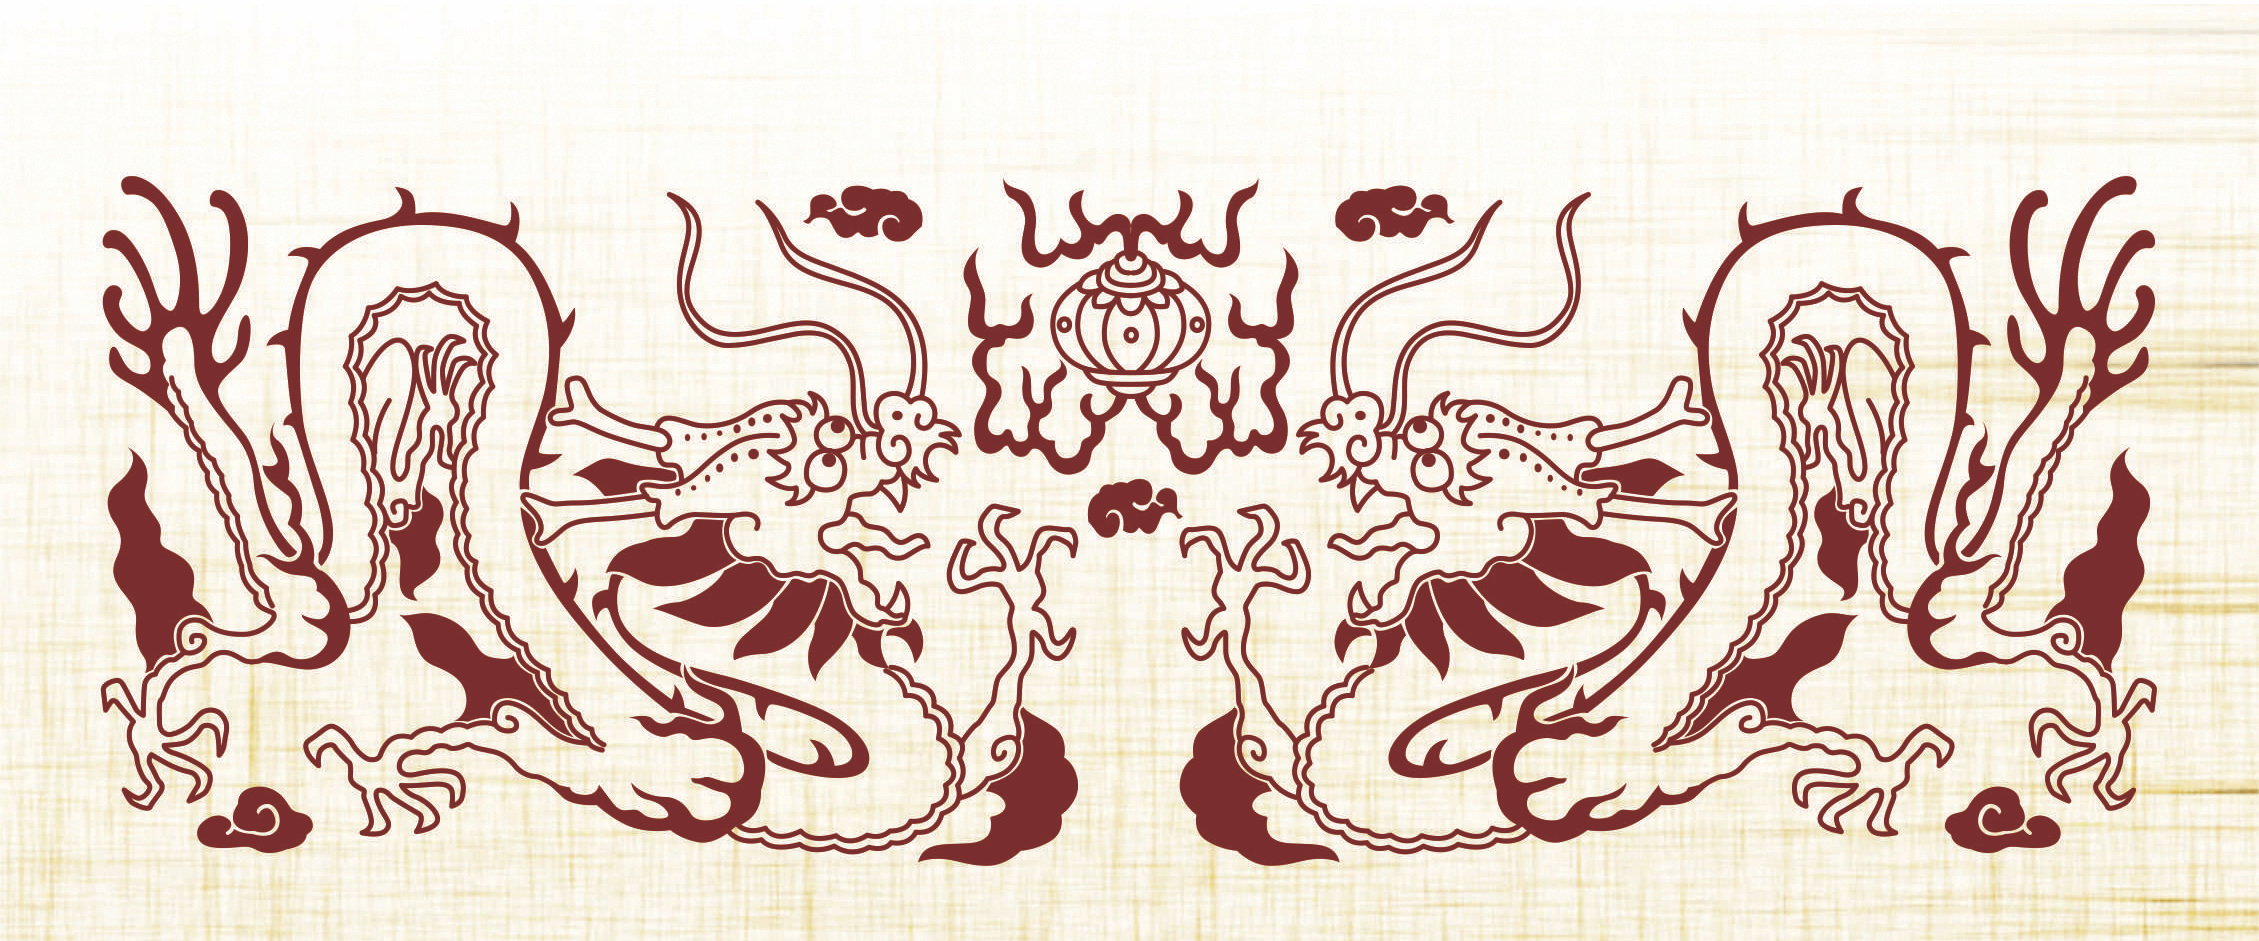 Rồng - Linh vật huyền bí trong văn hóa, tín ngưỡng các dân tộc Việt Nam